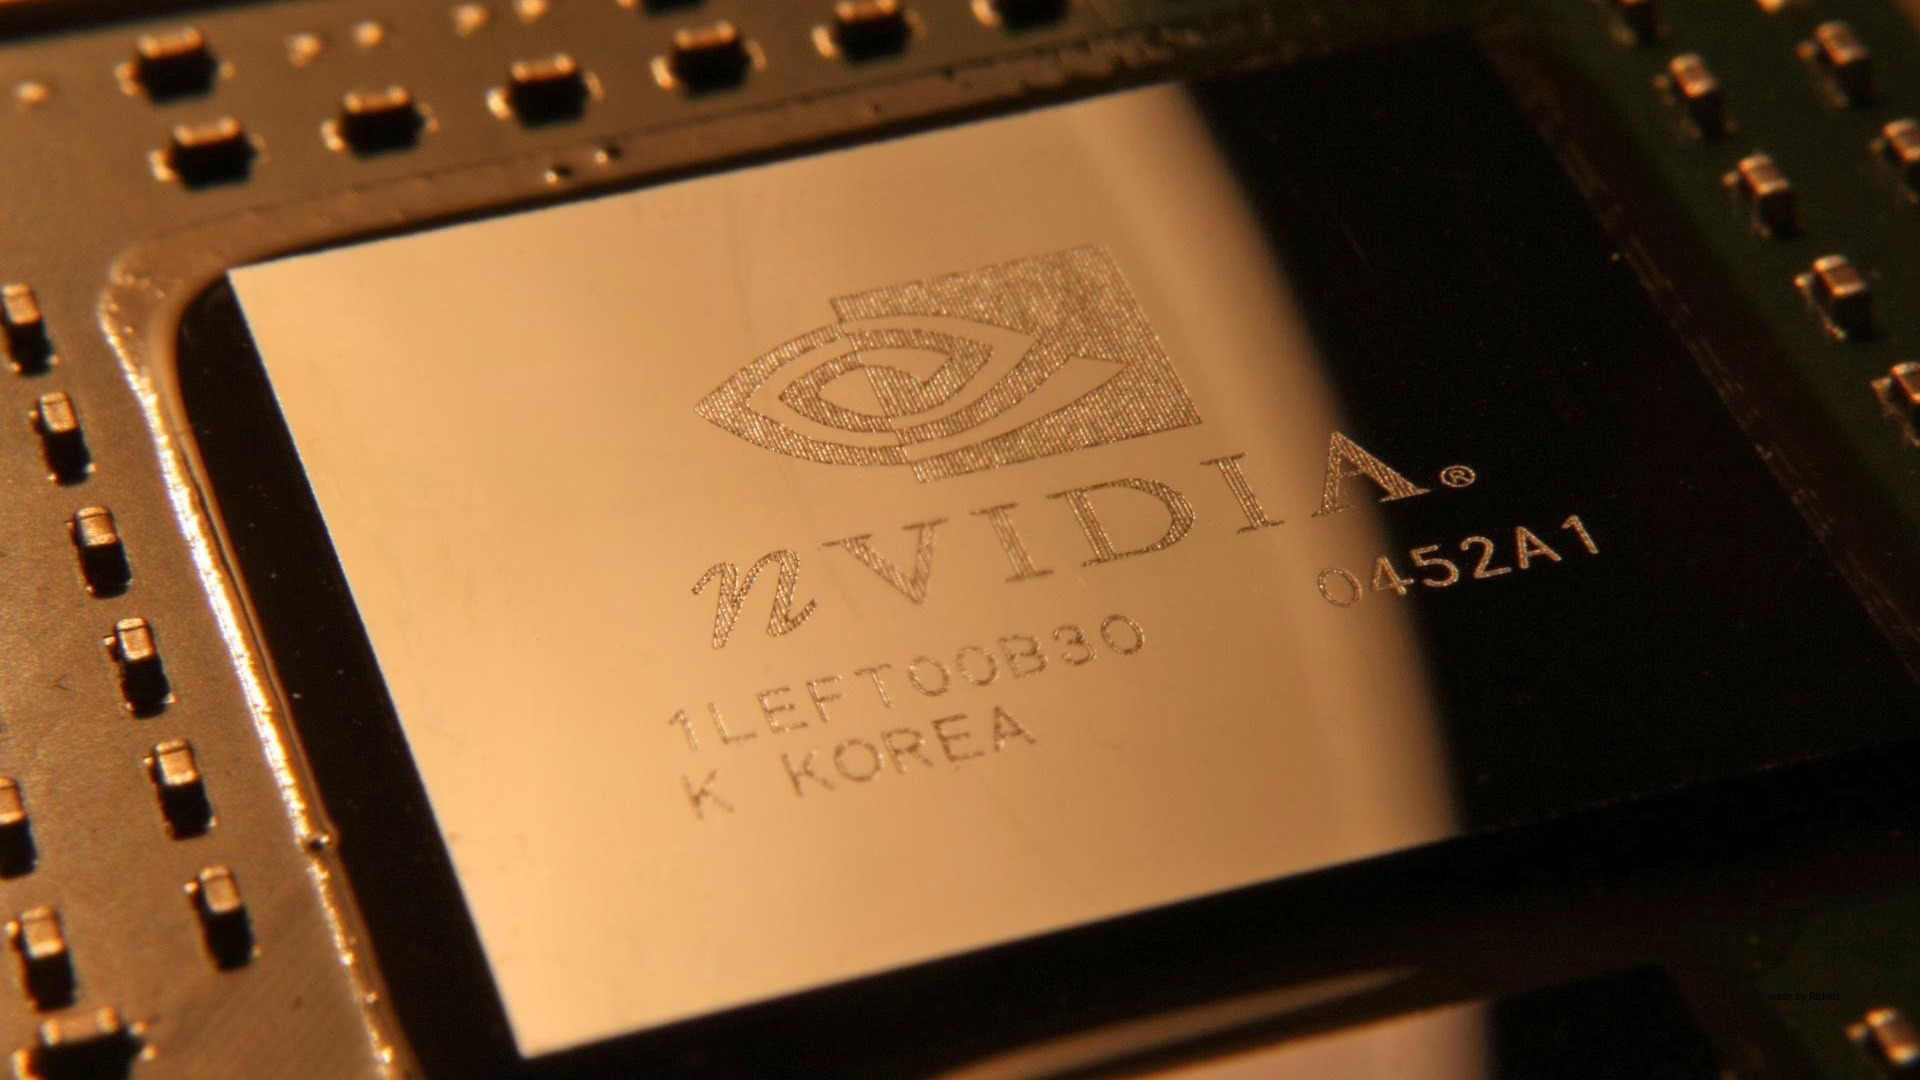 nVIdia Chipset for 1920 x 1080 HDTV 1080p resolution